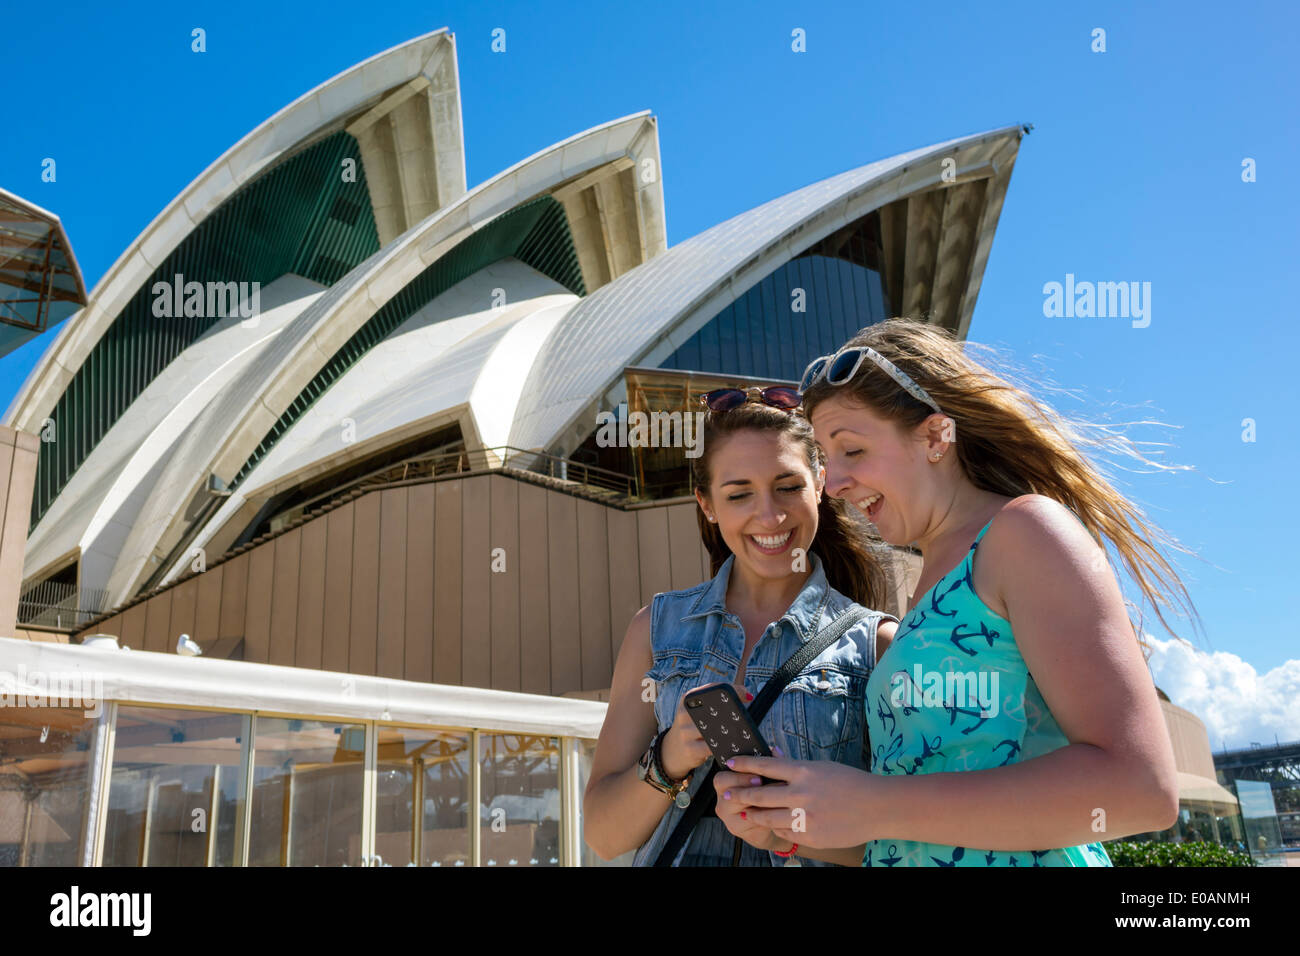 Sydney Australien, Sydney Hafen, Hafen, Sydney Opera House, Design, Schale, Dach, Keramikfliesen, Glas, Frau weibliche Frauen, Freunde, Smartphone-Handys Stockfoto